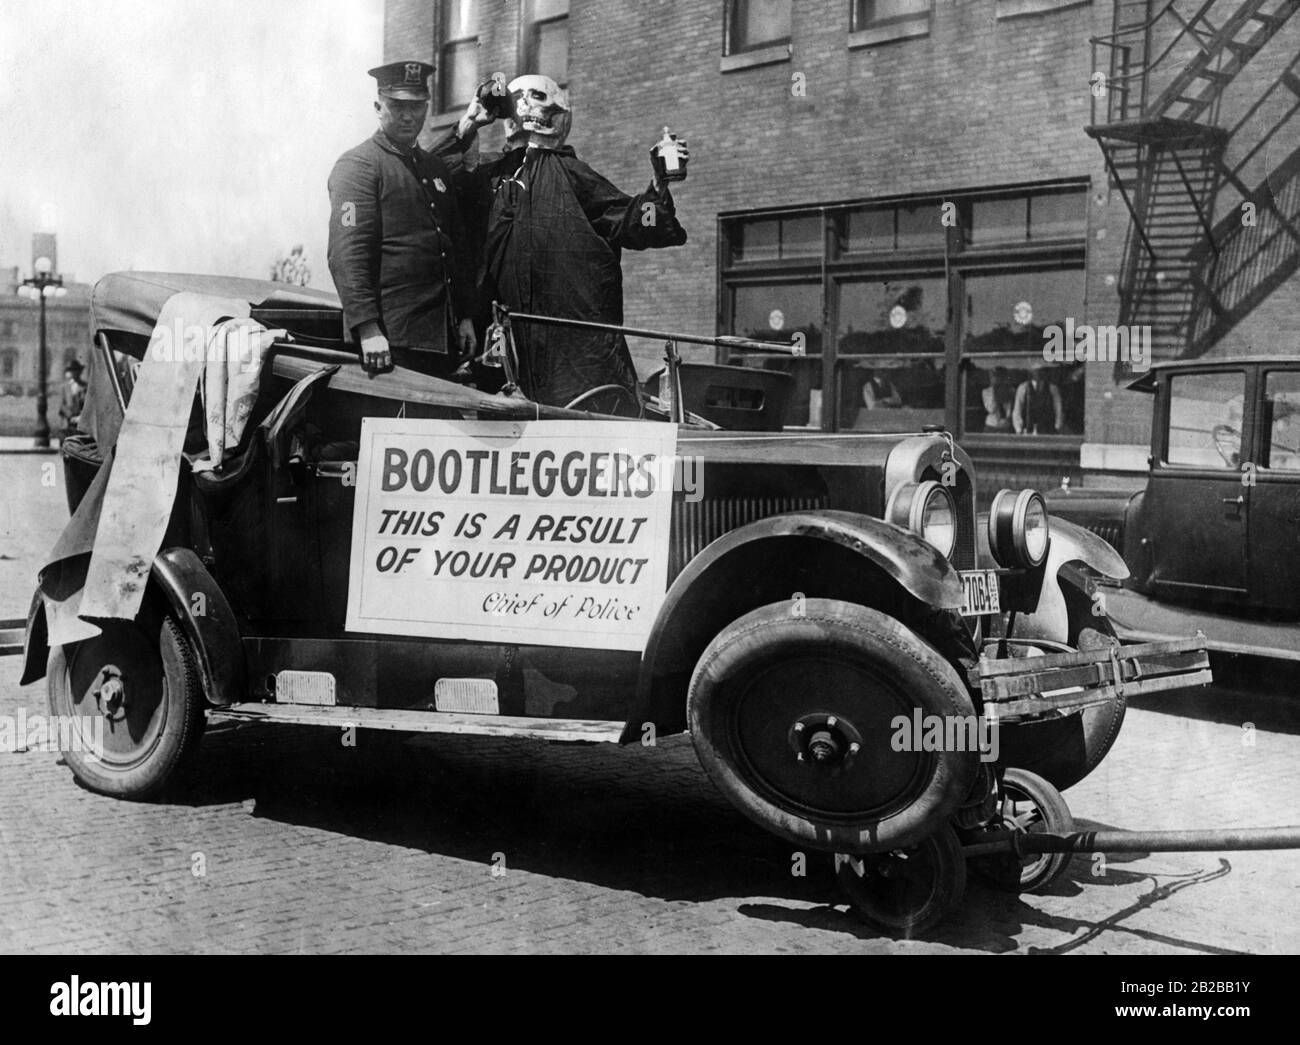 Campagne contre les bootleggers : un policier traverse la ville dans une voiture dans laquelle se tient un squelette buvant à partir d'une bouteille de liqueur. Un signe avec les mots: 'Bootleggers c'est un résultat de votre produit'. Banque D'Images